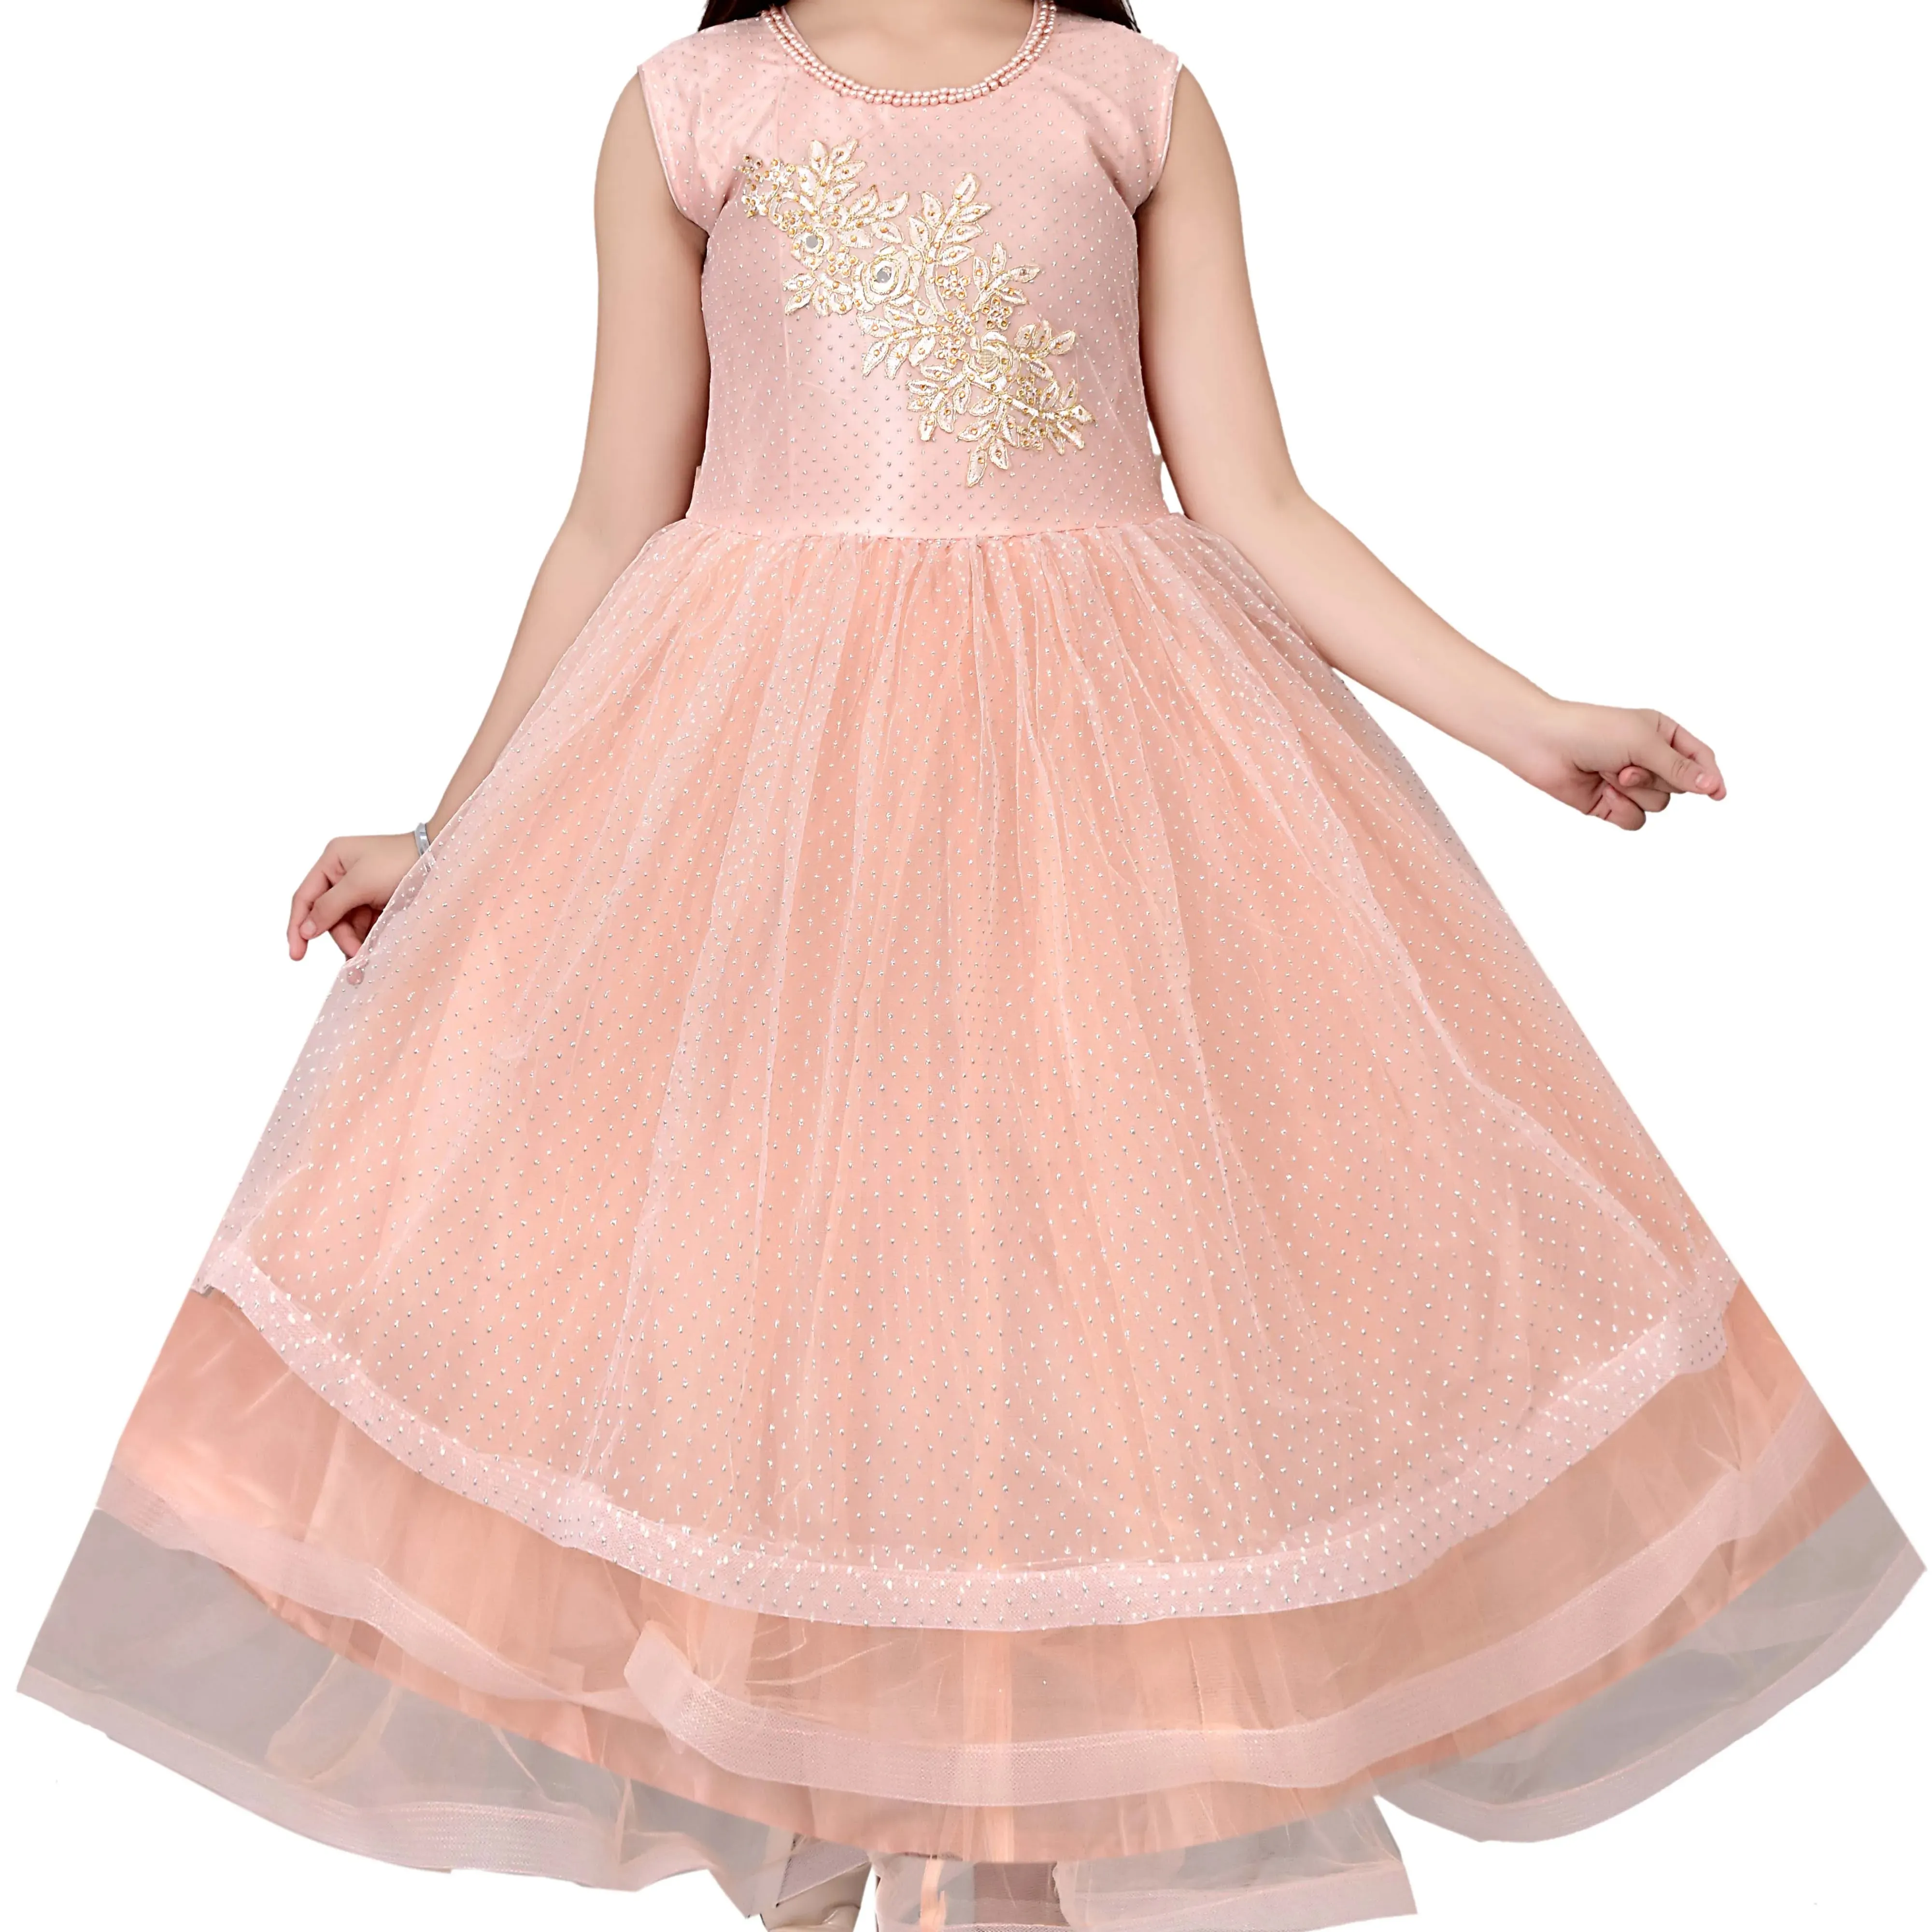 Chất lượng tốt nhất thiết kế thời trang truyền thống vá Net dài maxi Gown DRESS cho cô gái 3-10 năm trong mục Chứng Khoán